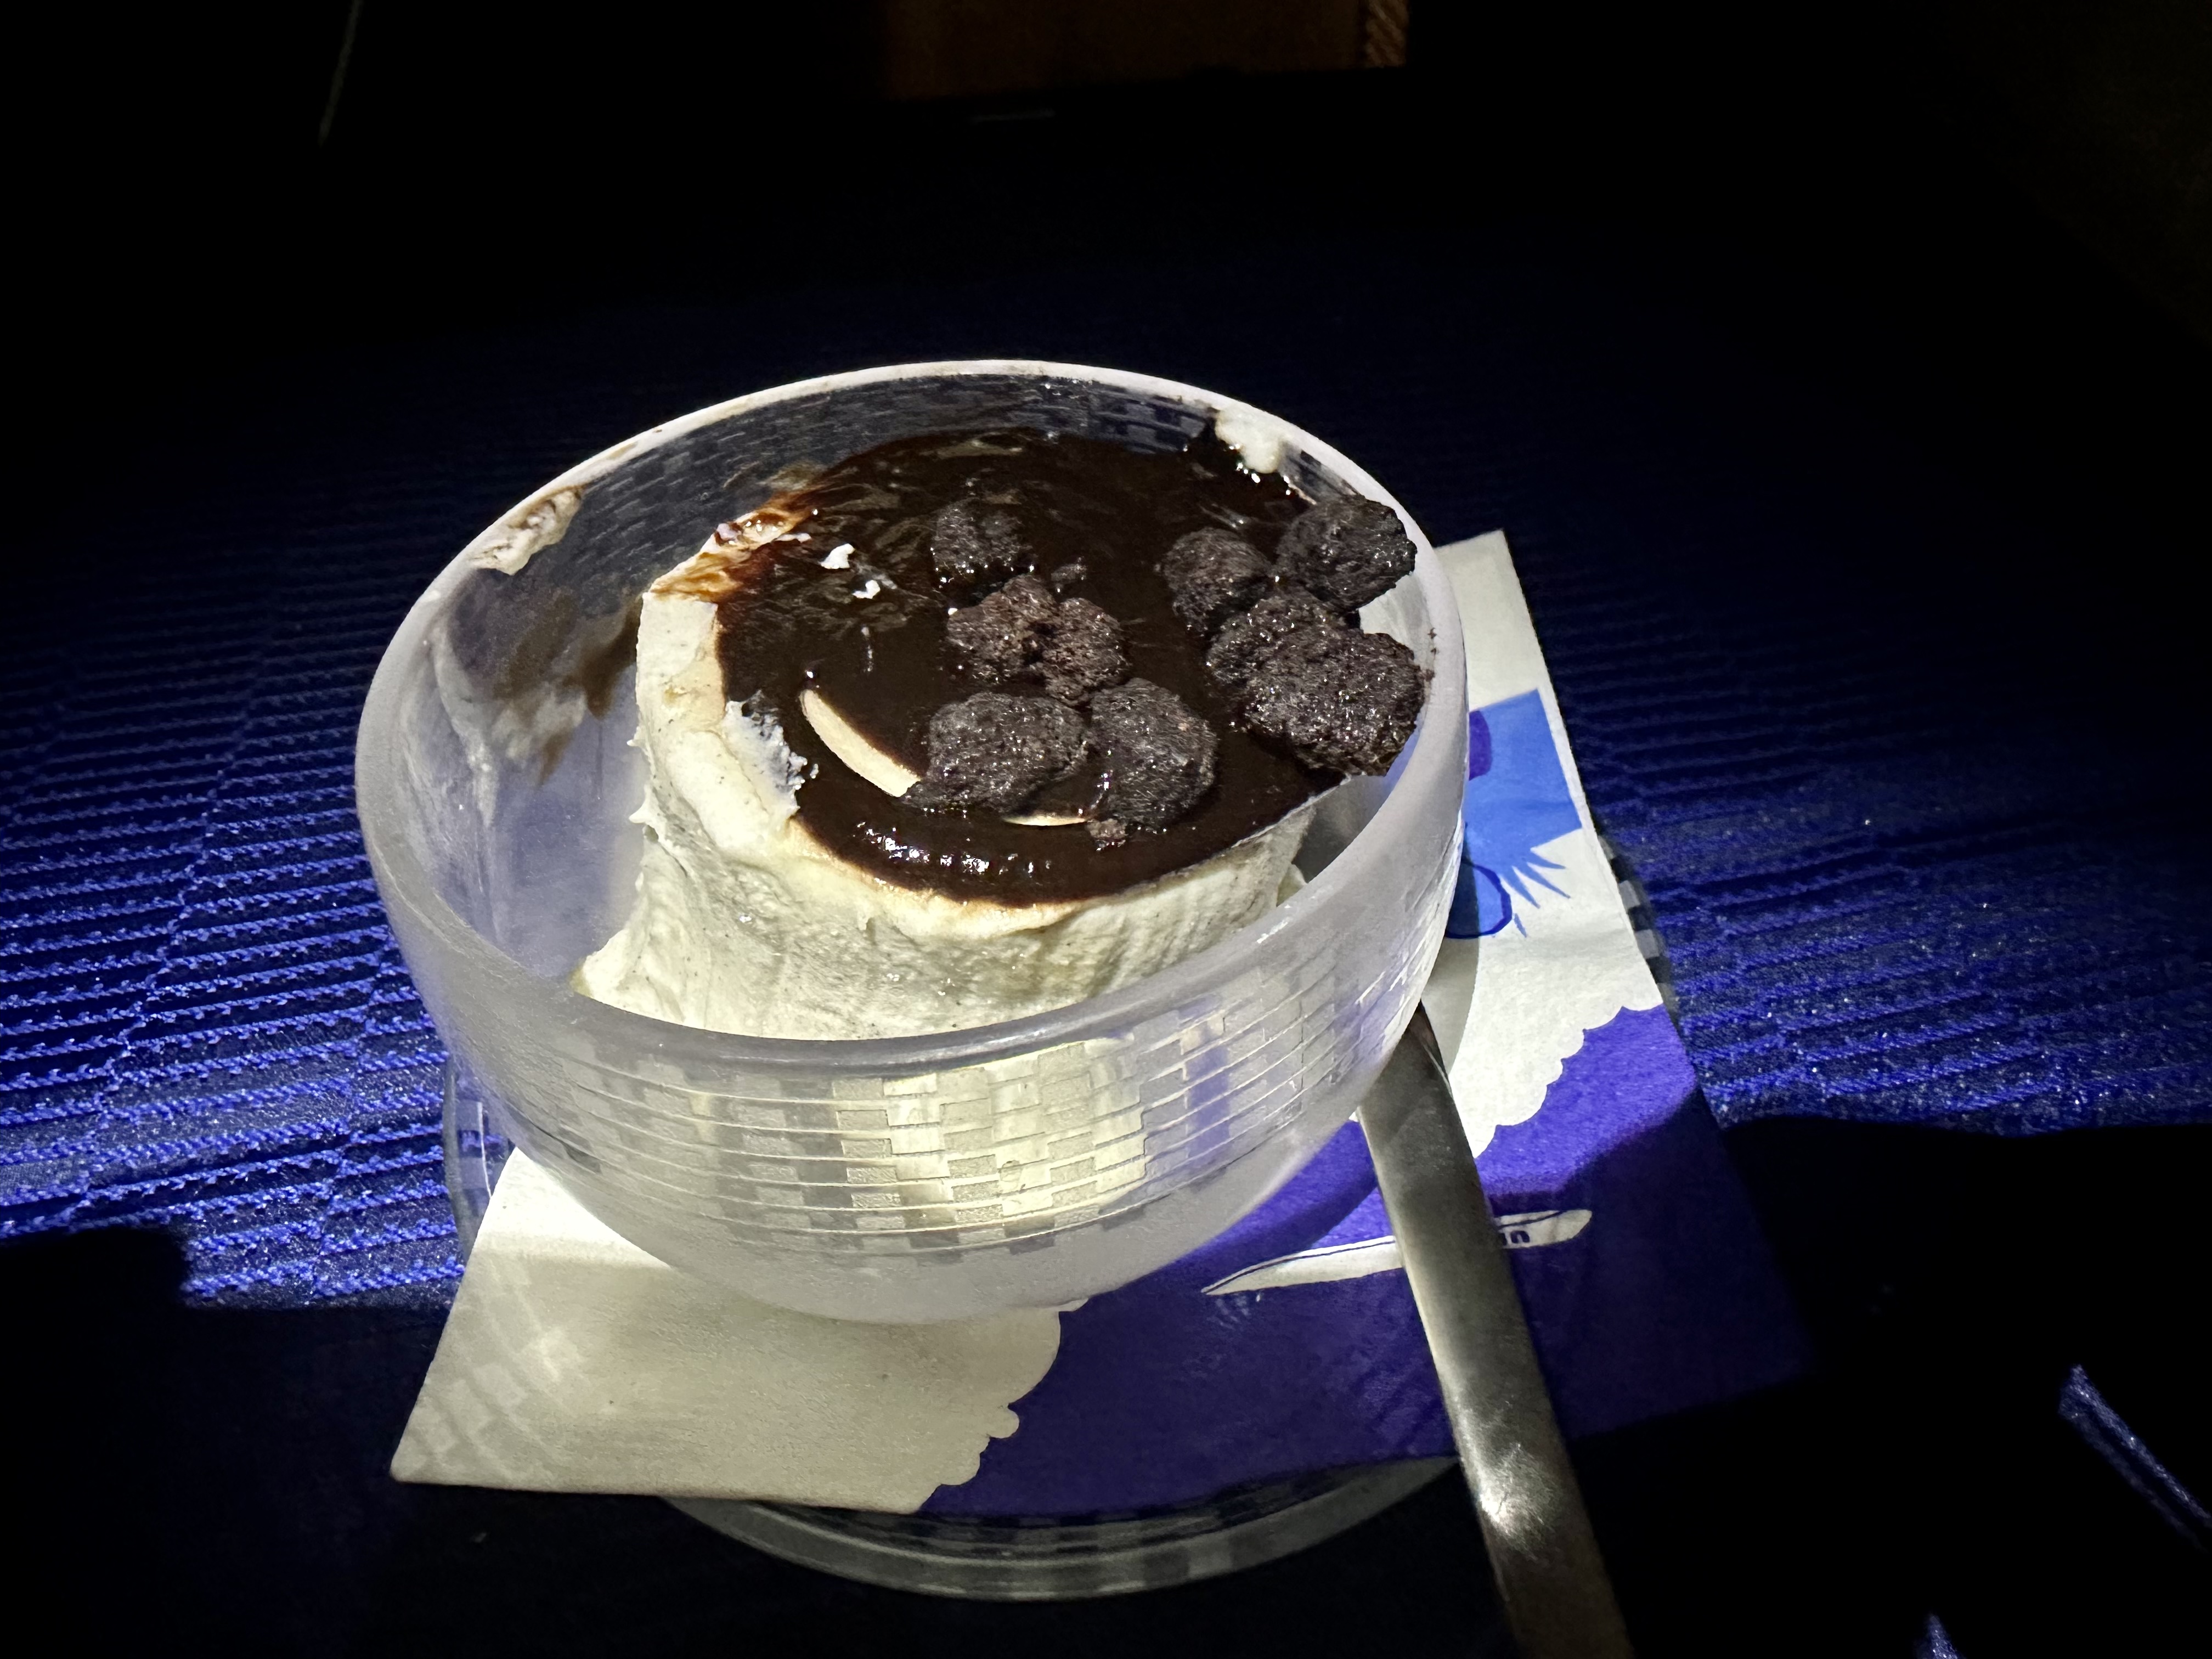 a dessert in a bowl